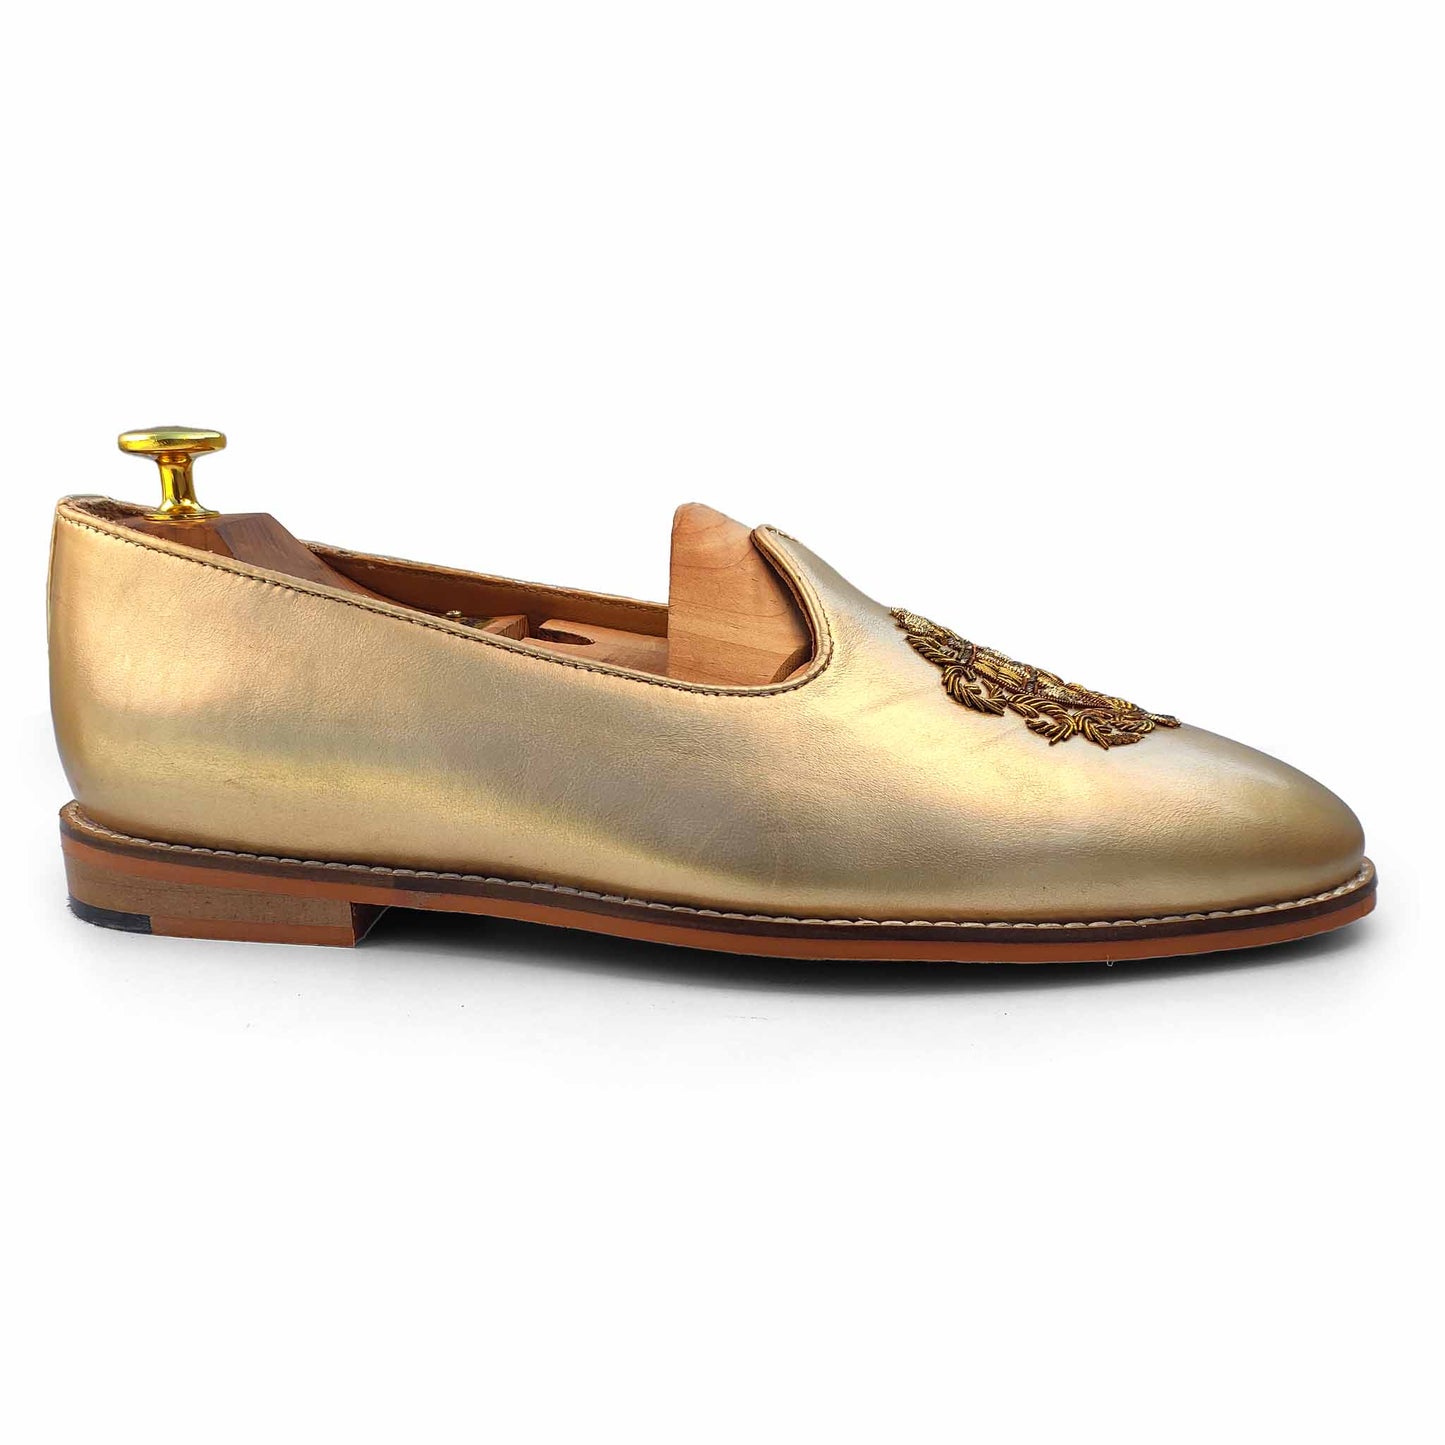 Light Gold Zardozi Handwork Wedding Shoes Ethnic Loafers Mojri for Men